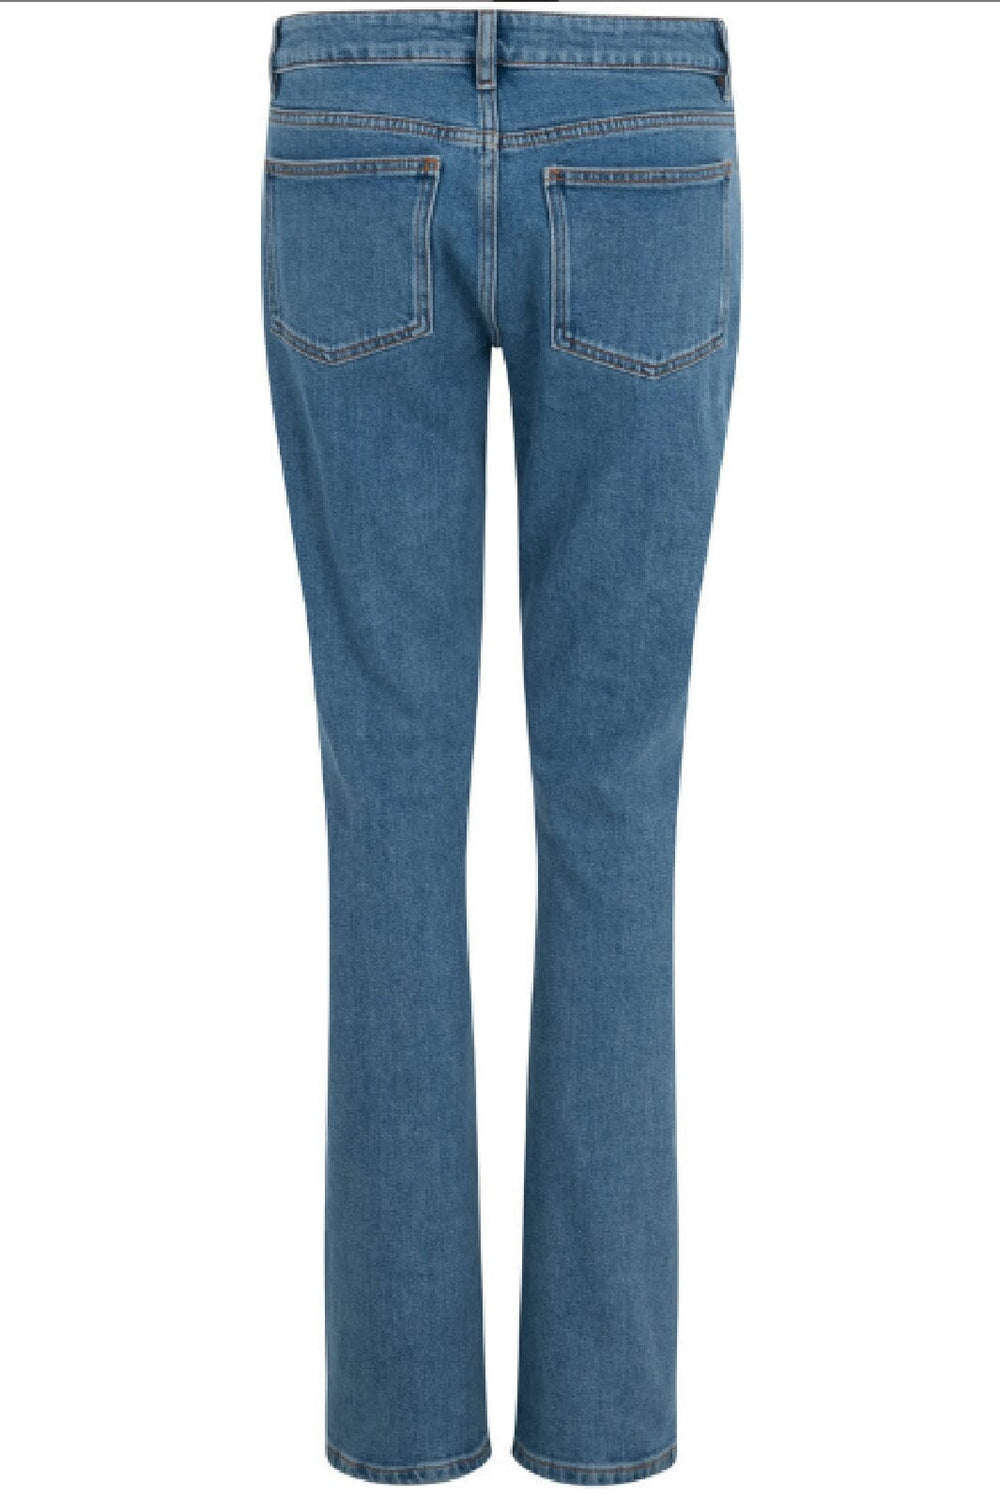 Cras - Amandacras Jeans - Medium Indigo Jeans 